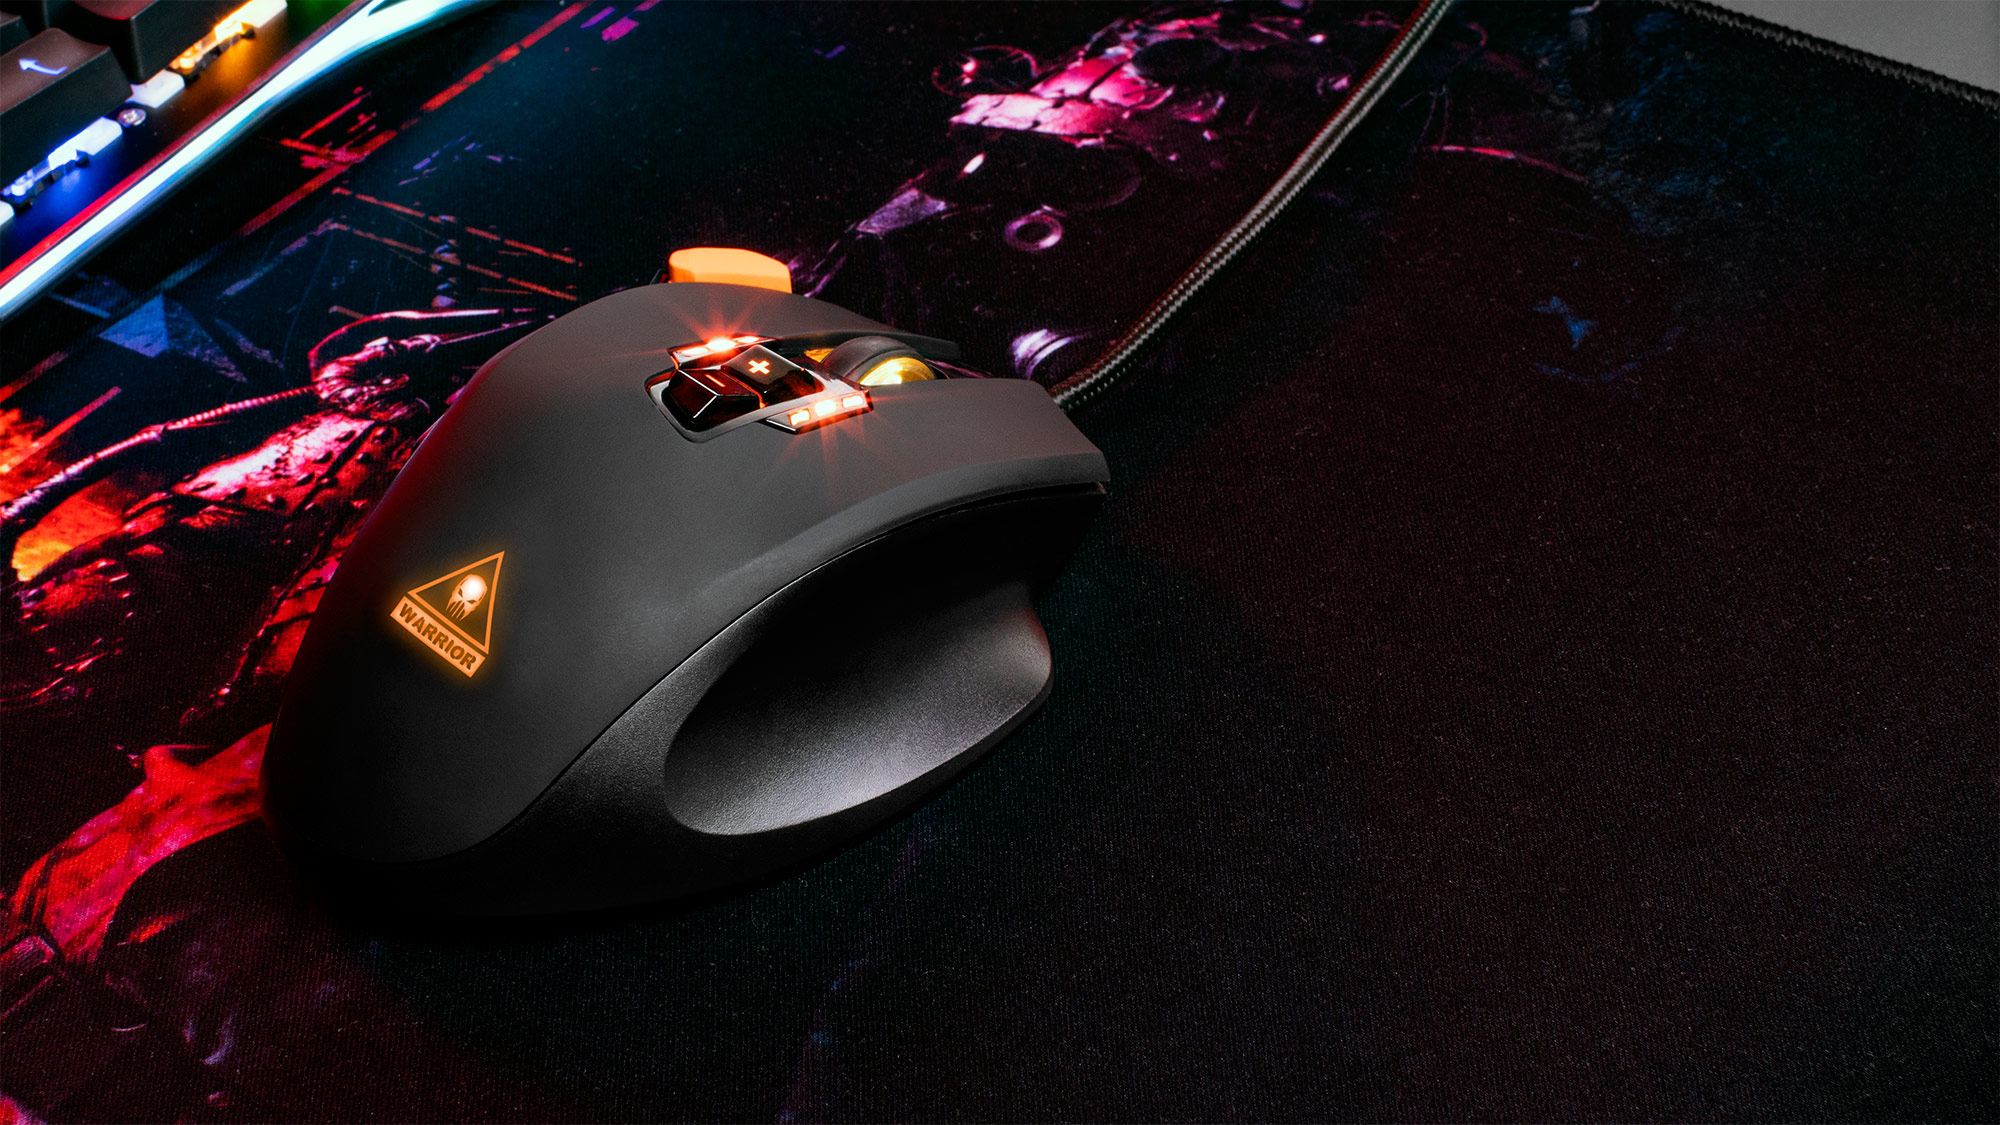 Alege iluminarea dintr-o paleta larga de culori! Mouse-ul GM-50 de la Kruger&Matz are rotita si logo-ul iluminate, putand alege culoarea in functie de preferintele tale. Iar pentru indicatorul DPI poti sa optezi pentru una din 6 culori. 